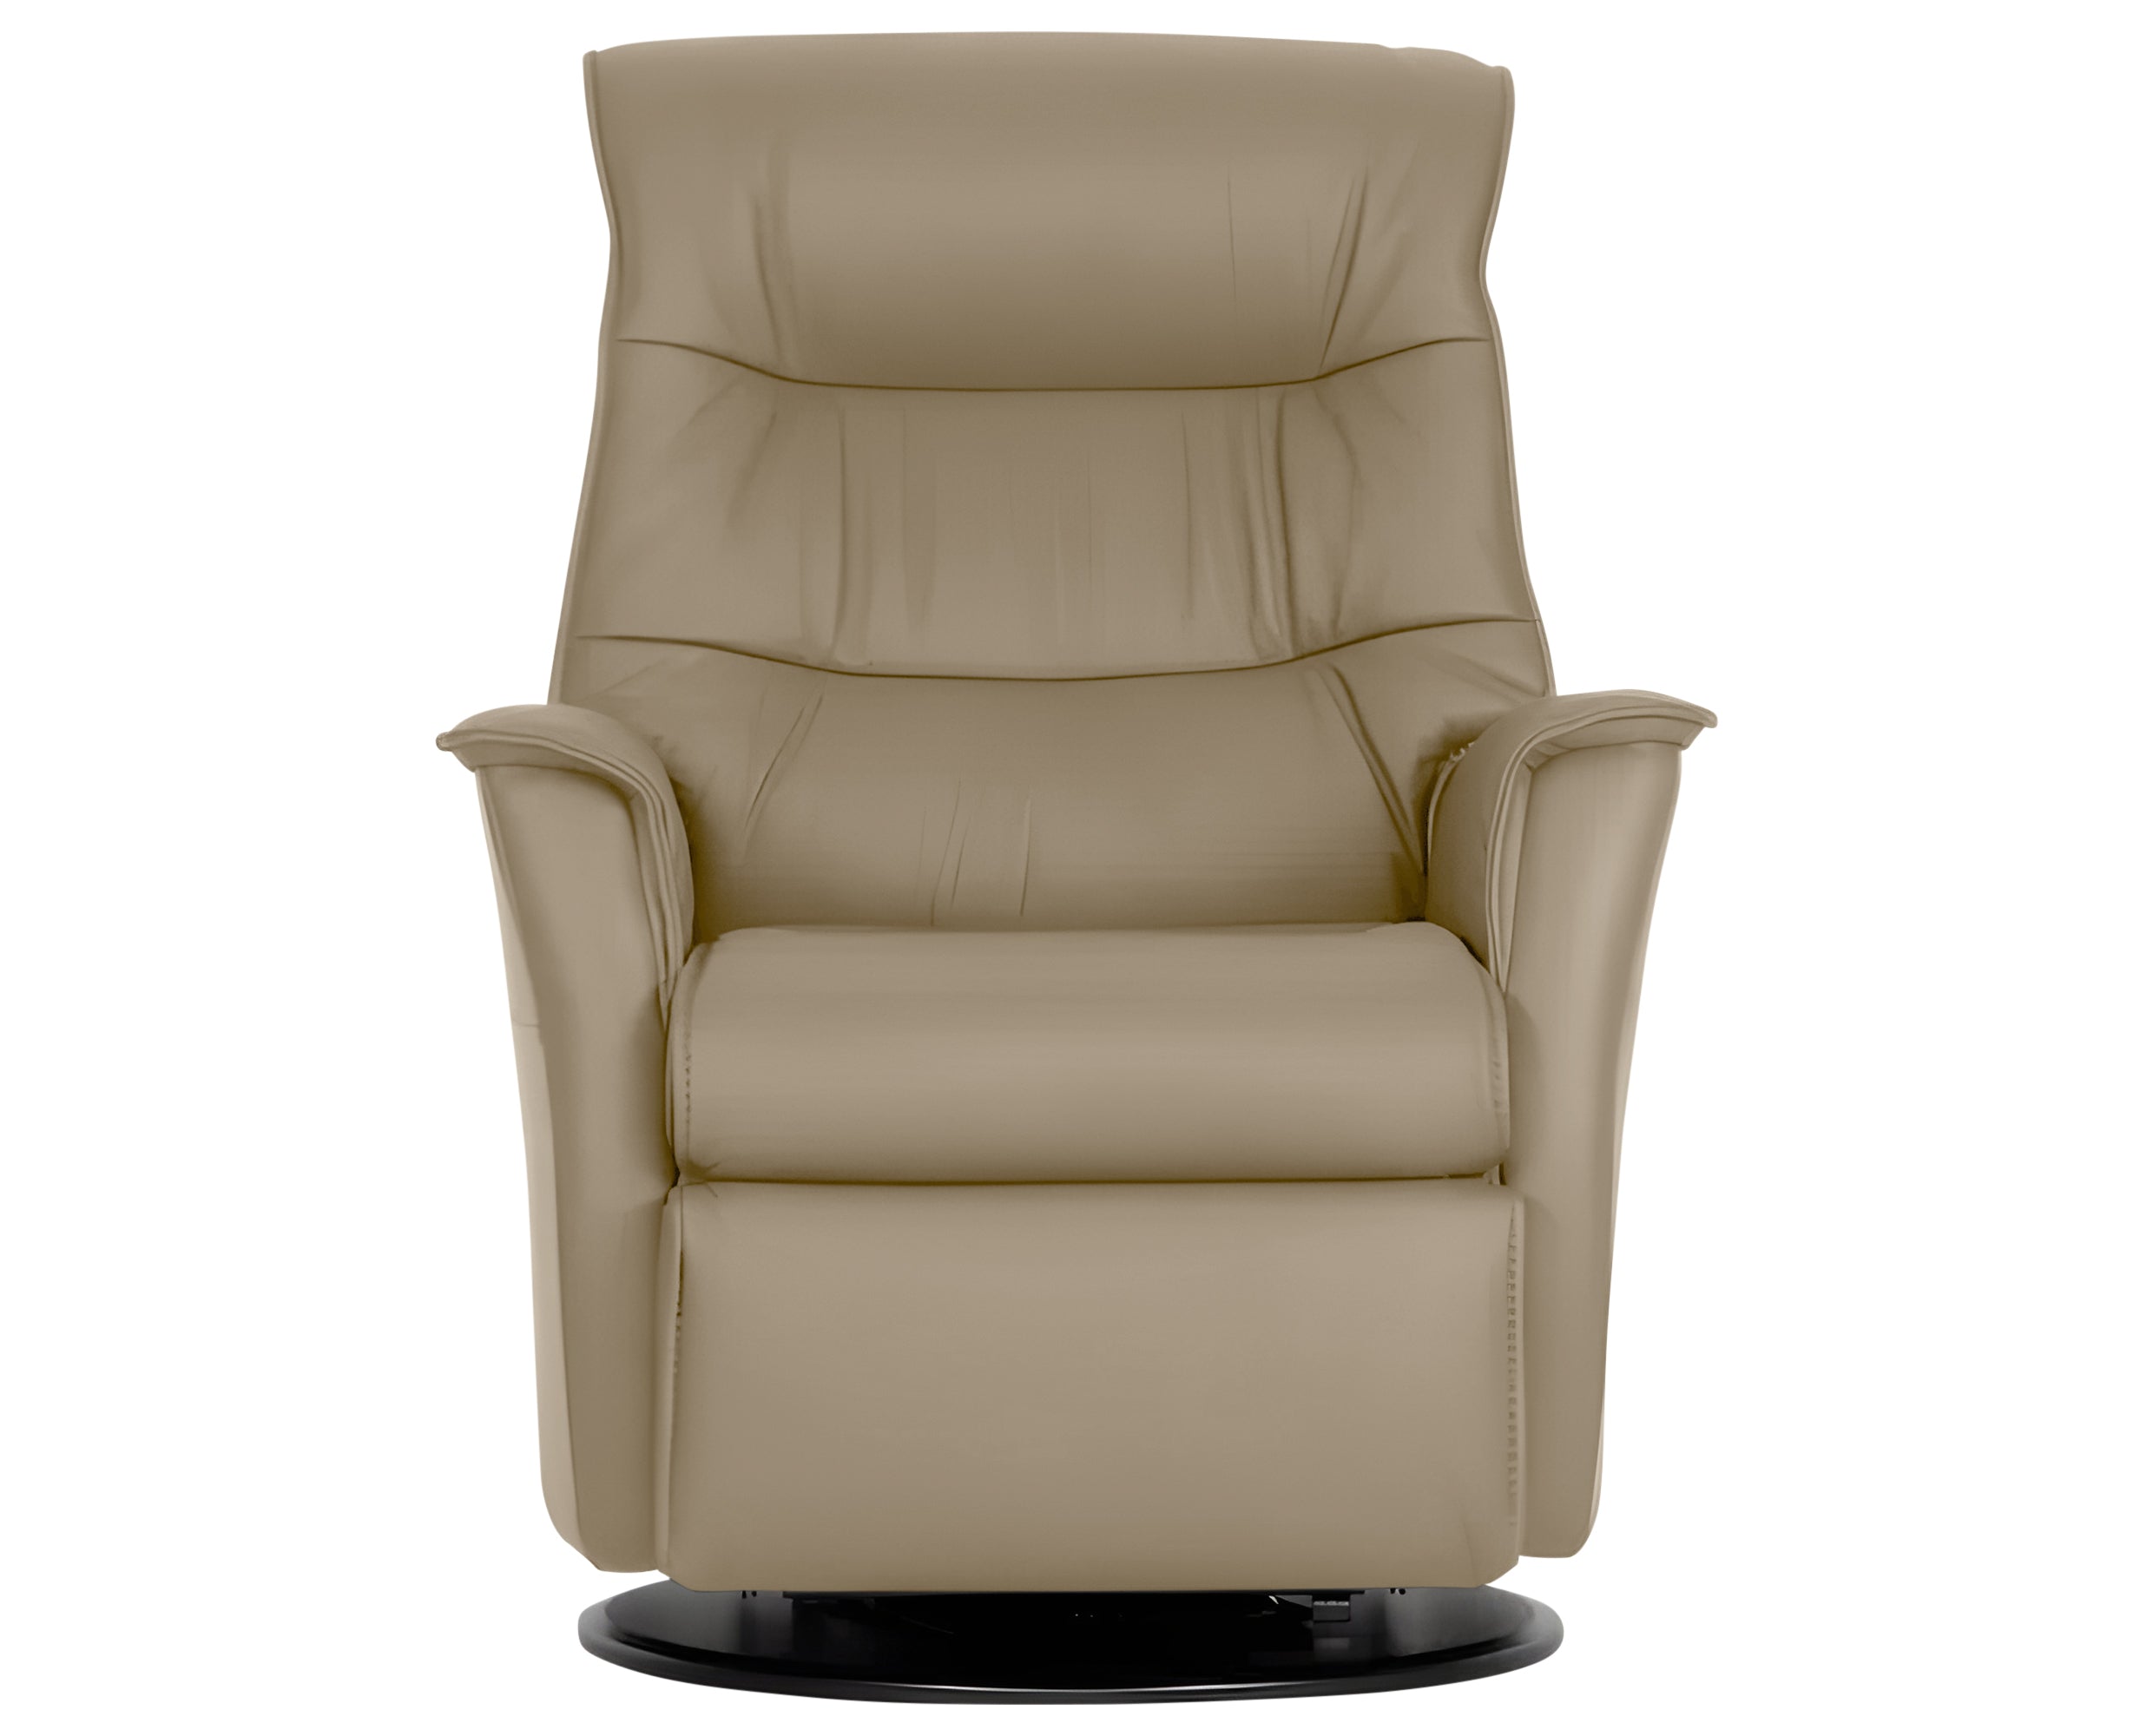 Trend Leather Beige | Norwegian Comfort Paramount Recliner | Valley Ridge Furniture